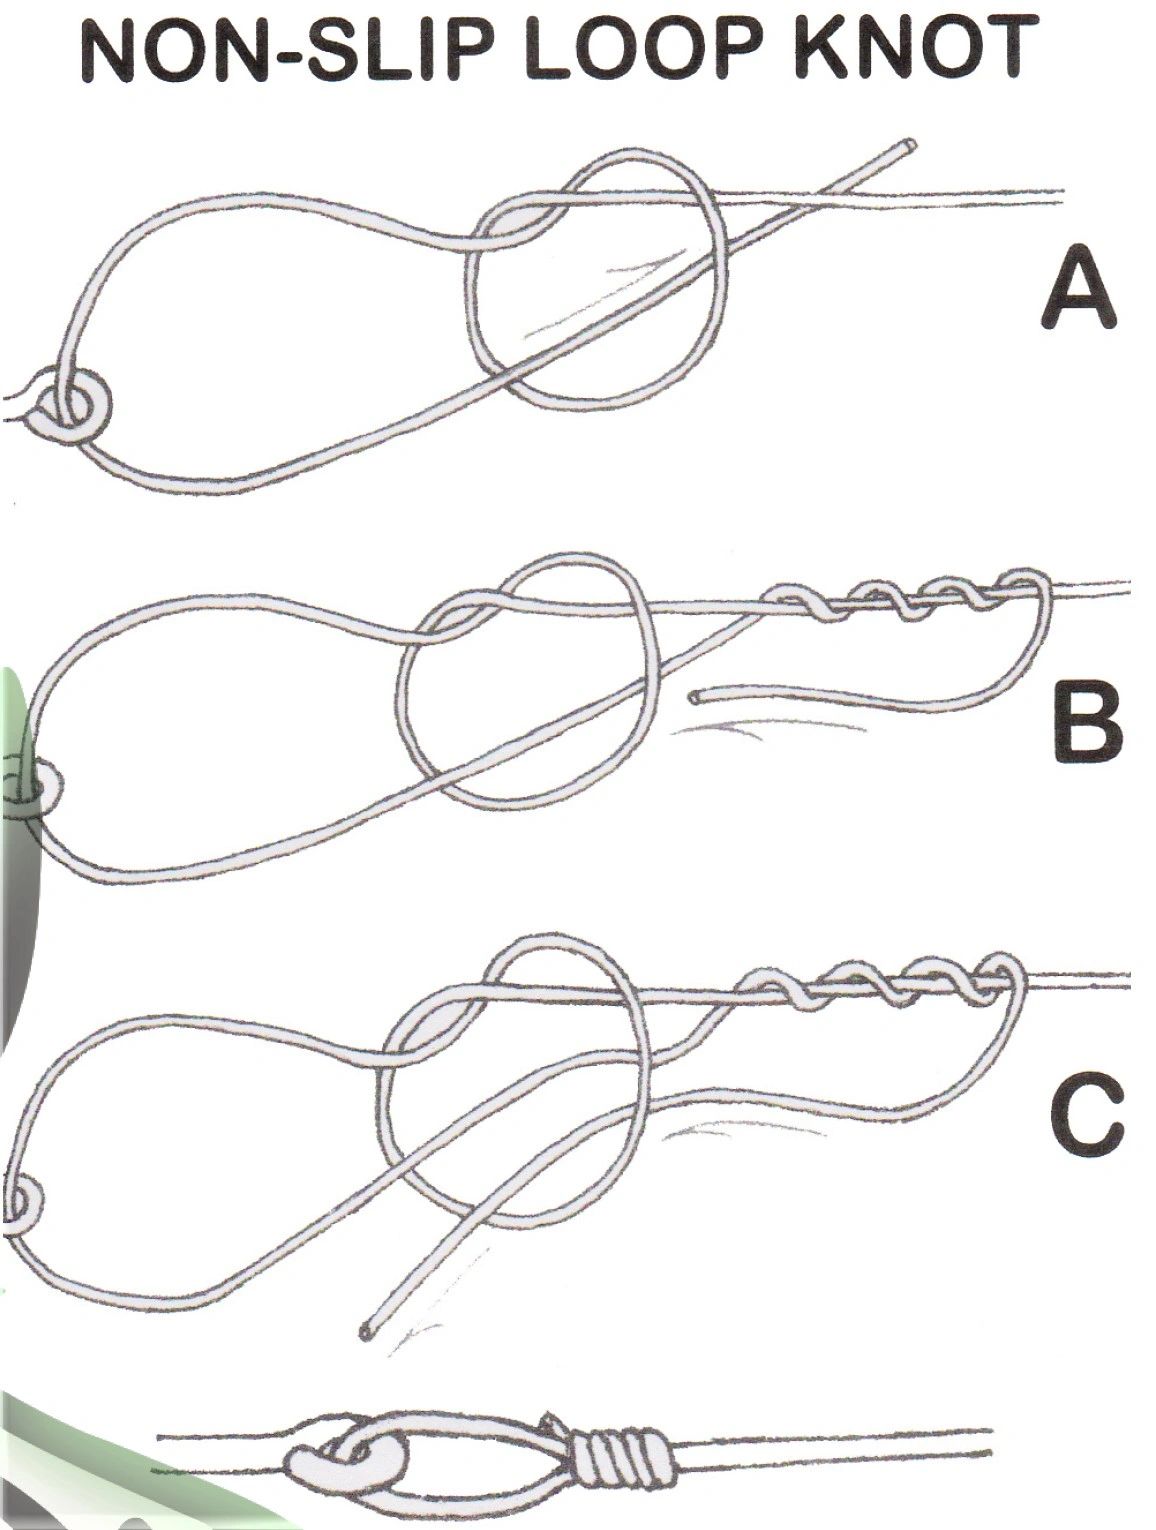 Patrick Lemire  Non-slip loop knot technique